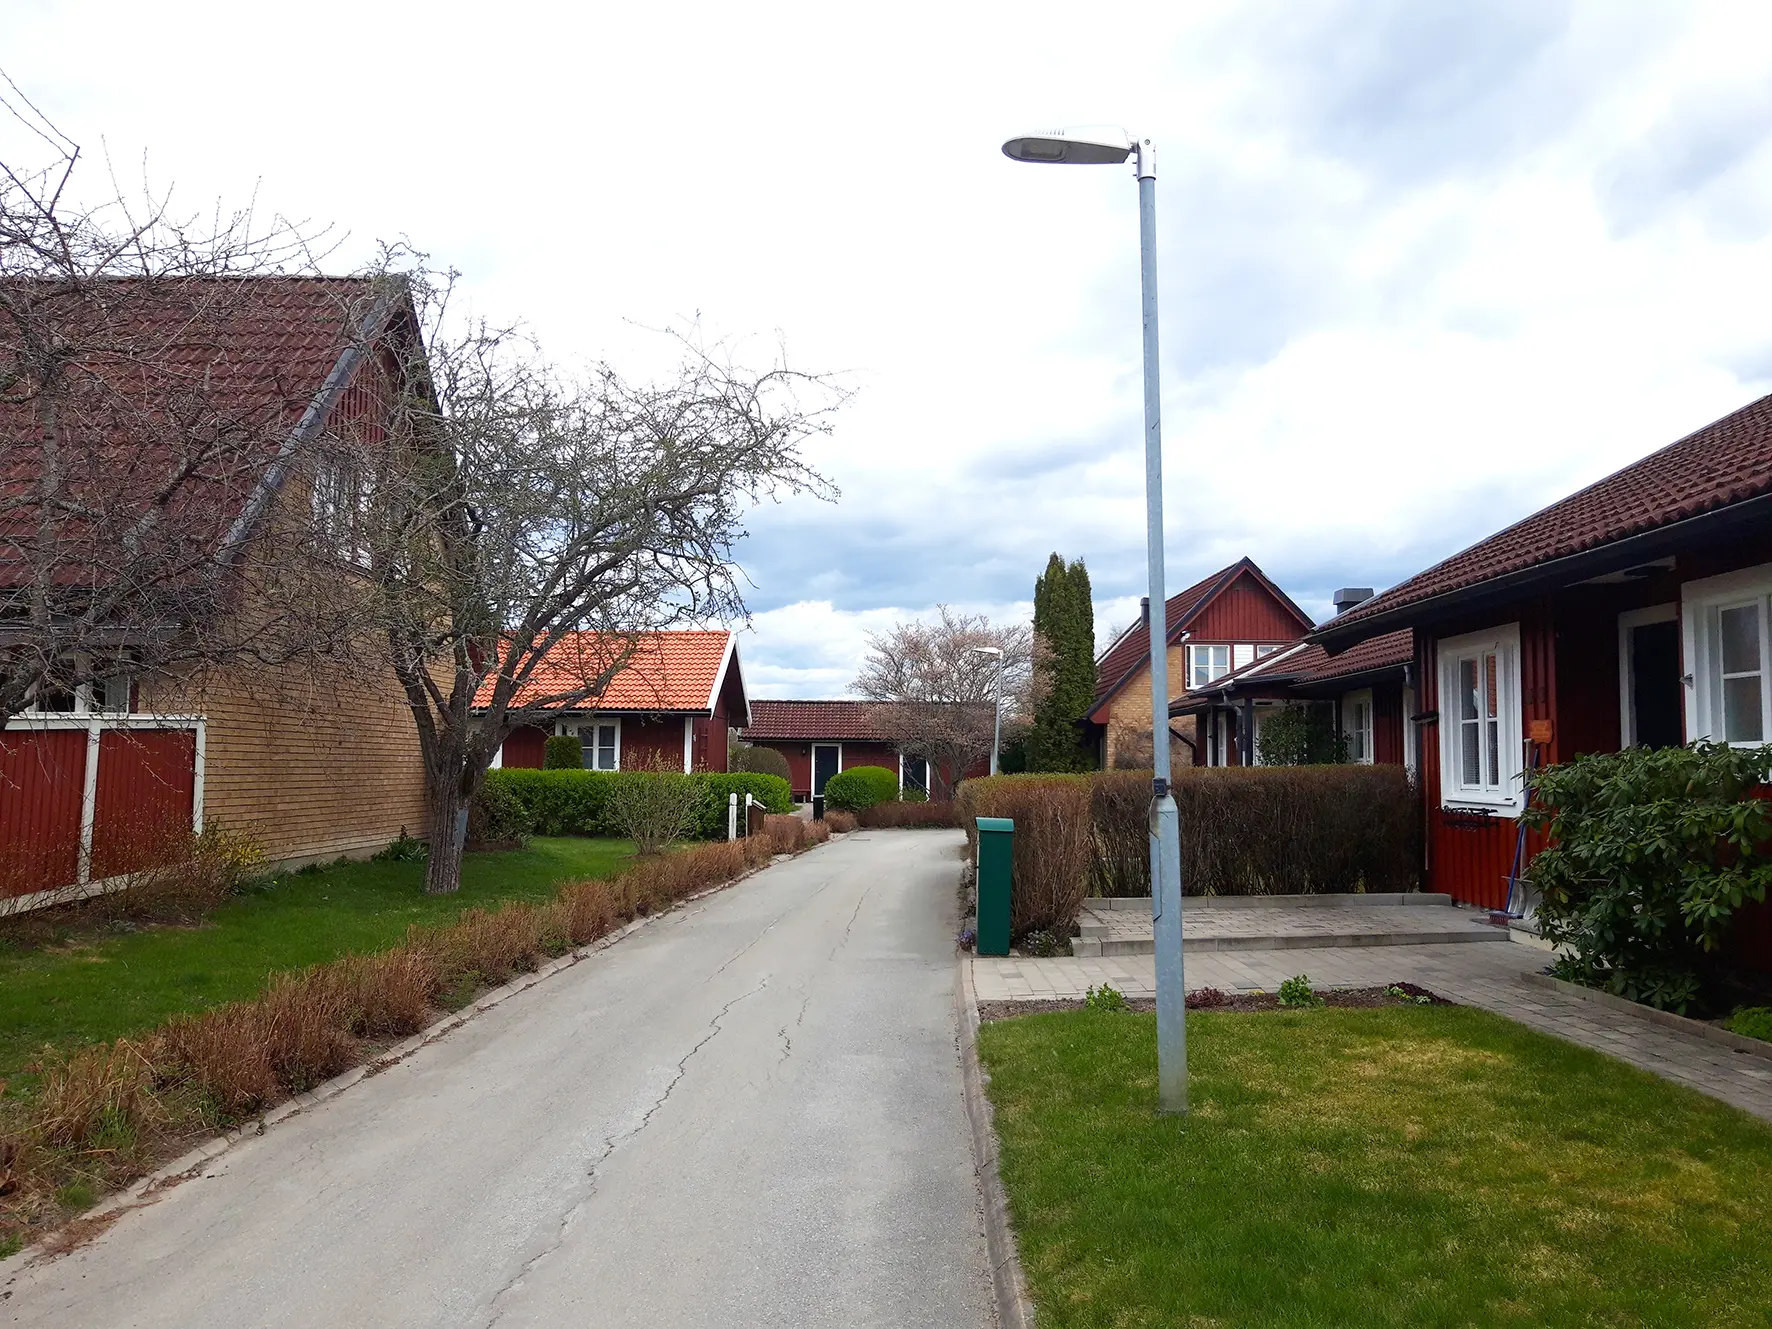 Bostadshus på Skälby i Västerås.